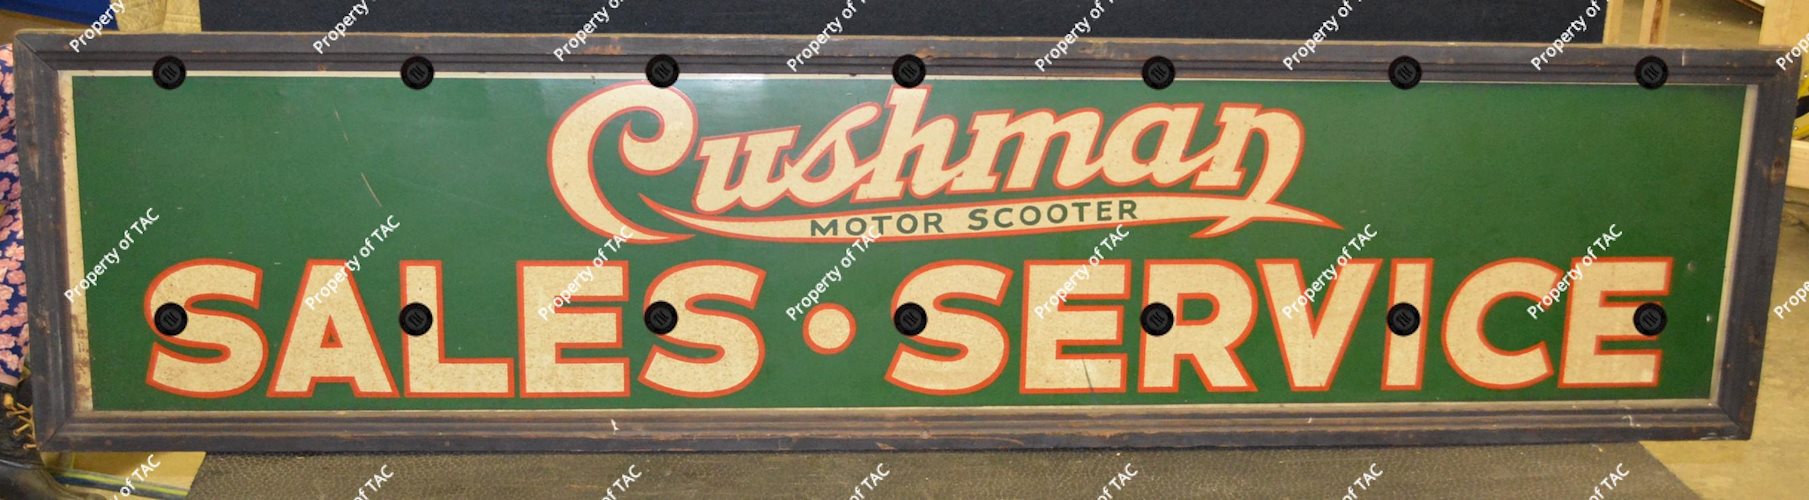 Cushman Motor Scooter Sales-Service Metal Sign